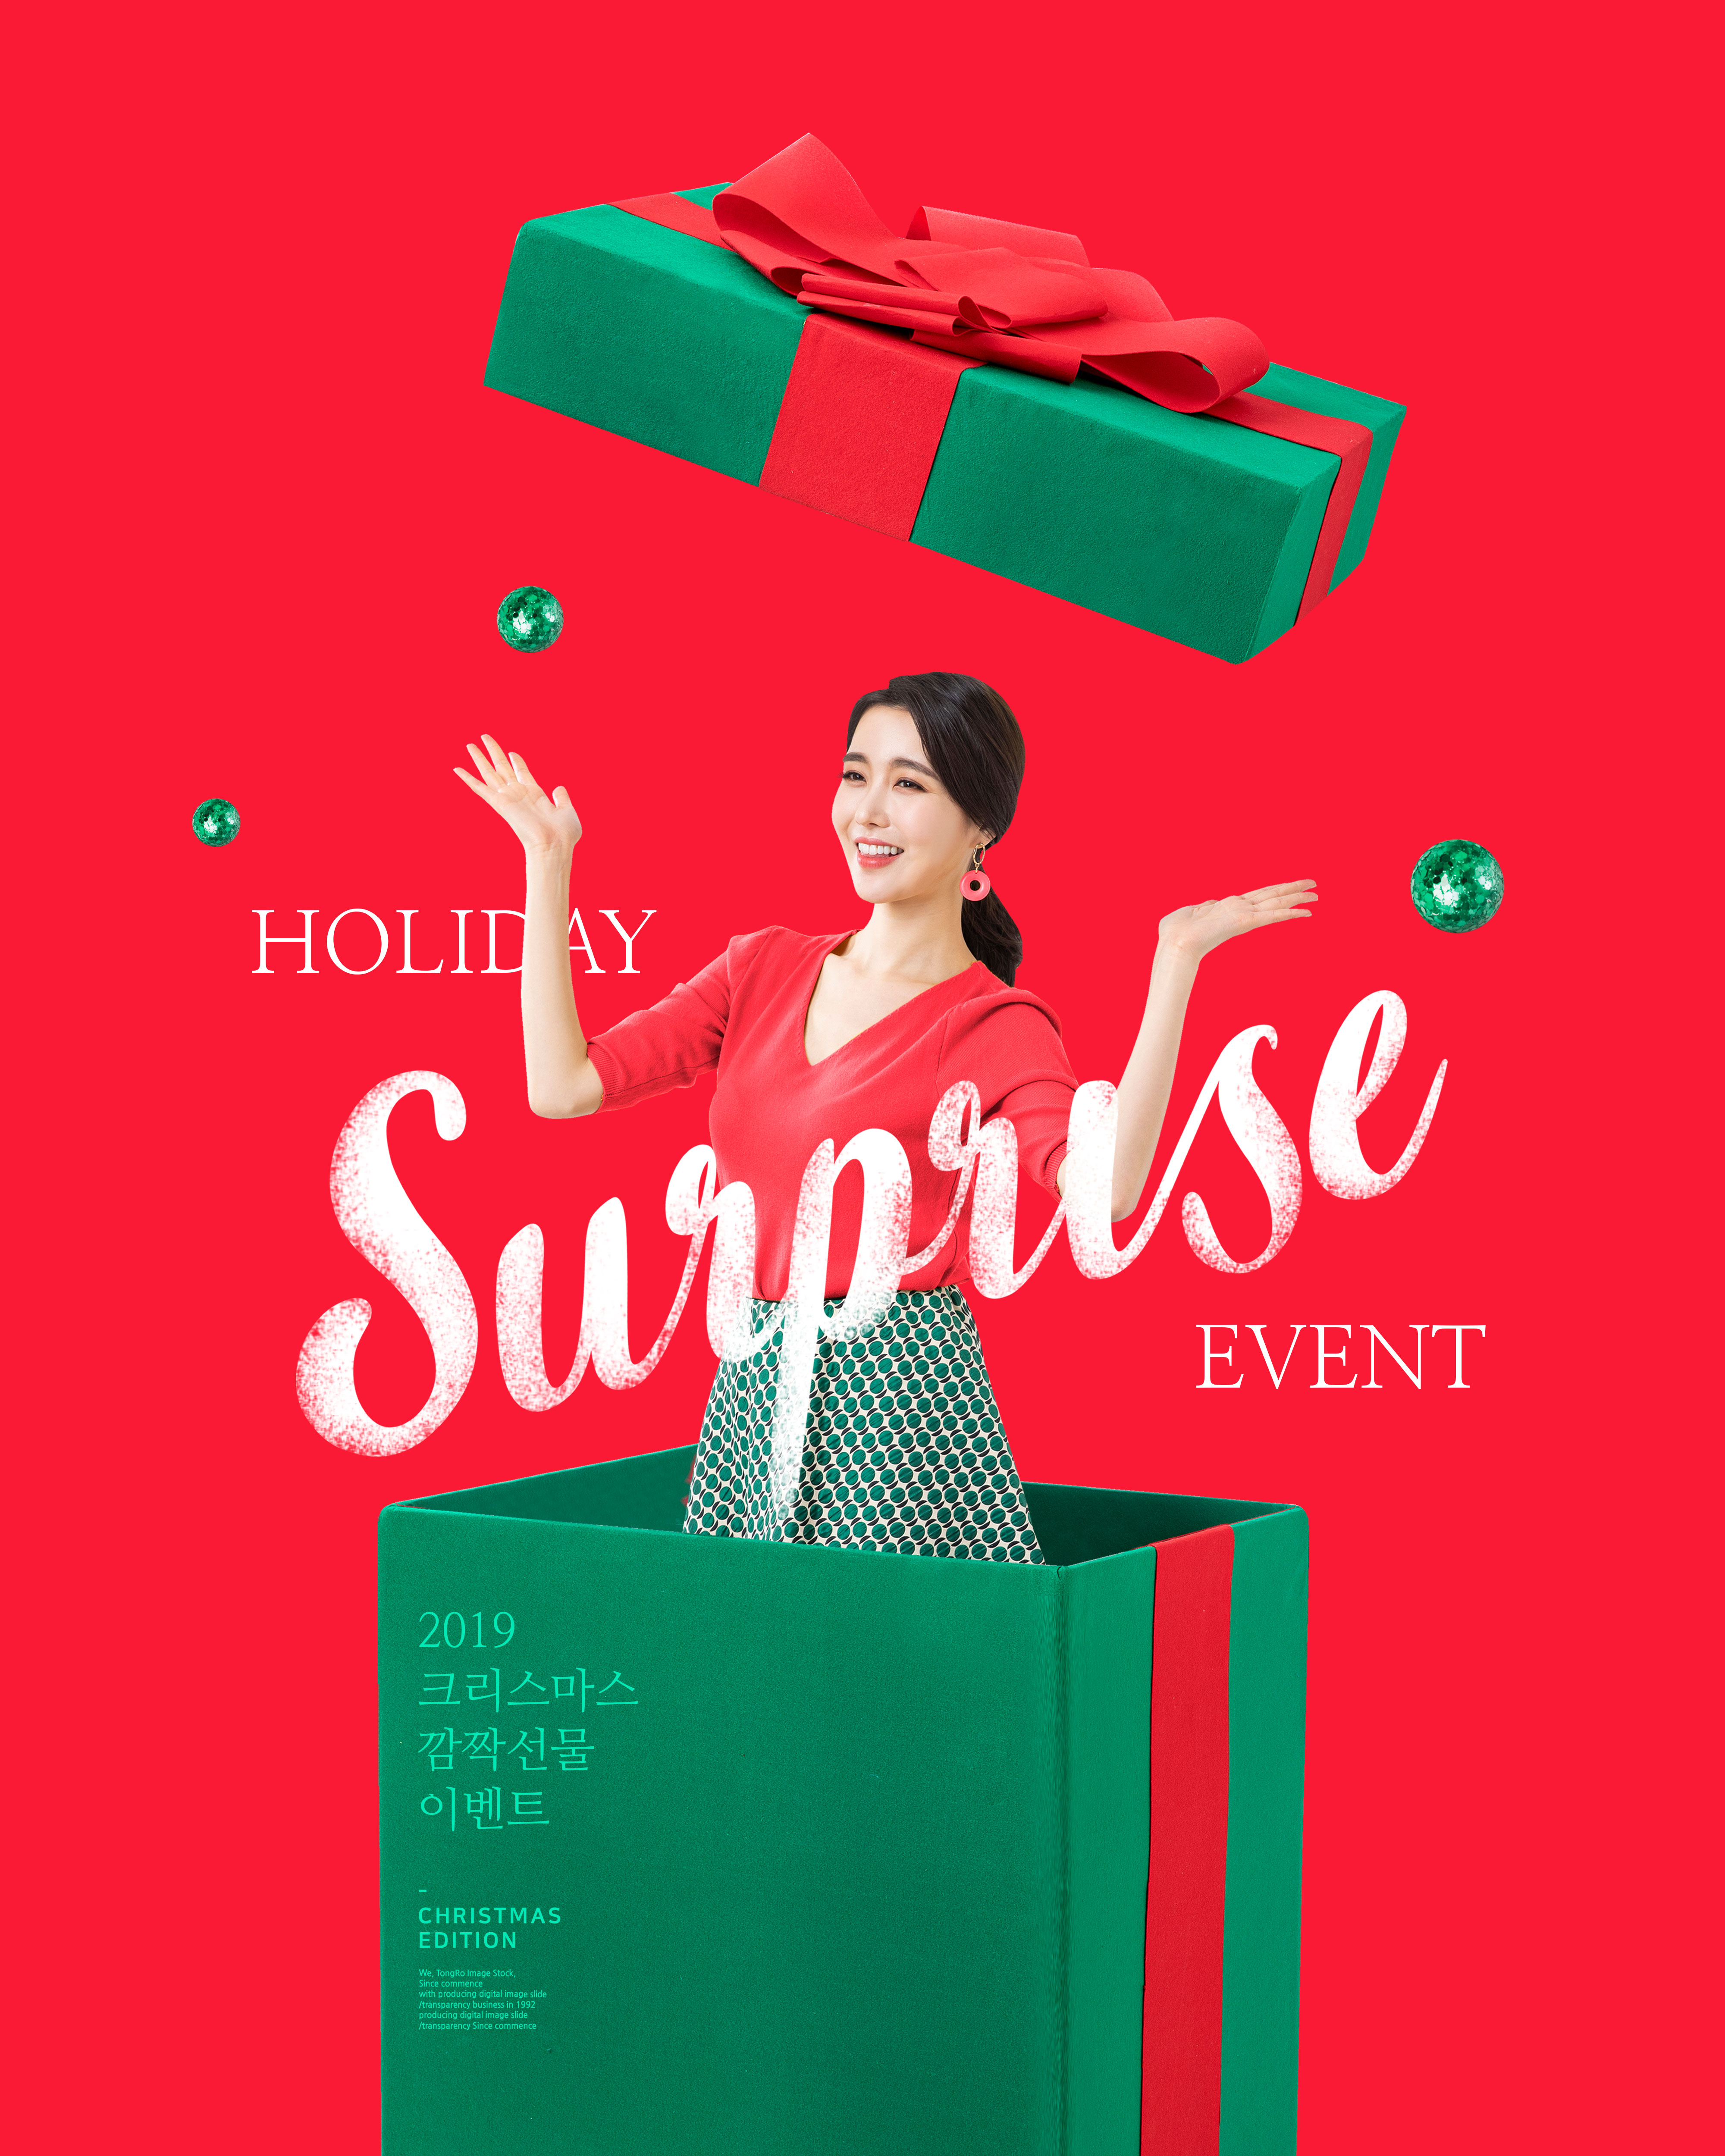 大红色背景圣诞礼品促销主题海报传单psd模板插图